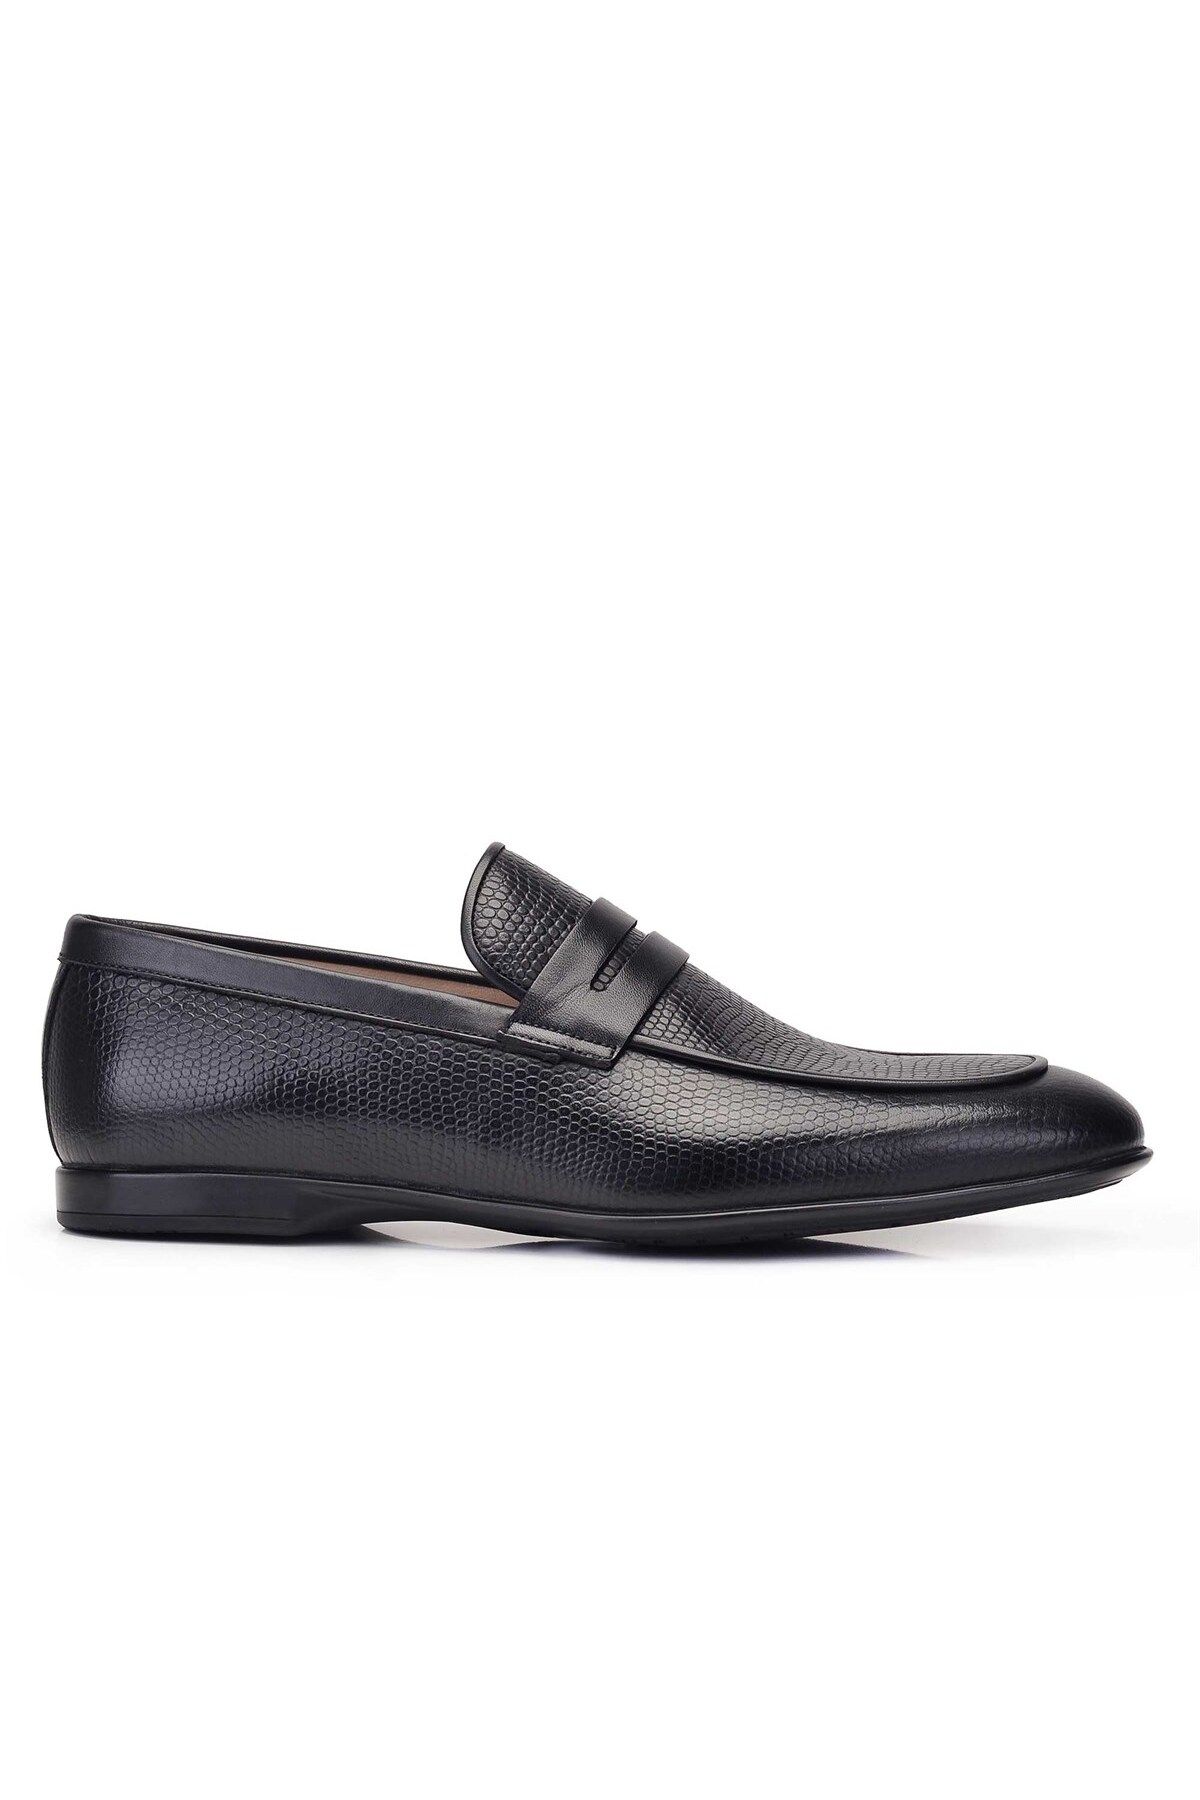 Nevzat Onay Hakiki Deri Siyah Günlük Loafer Yazlık Erkek Ayakkabı -11780-